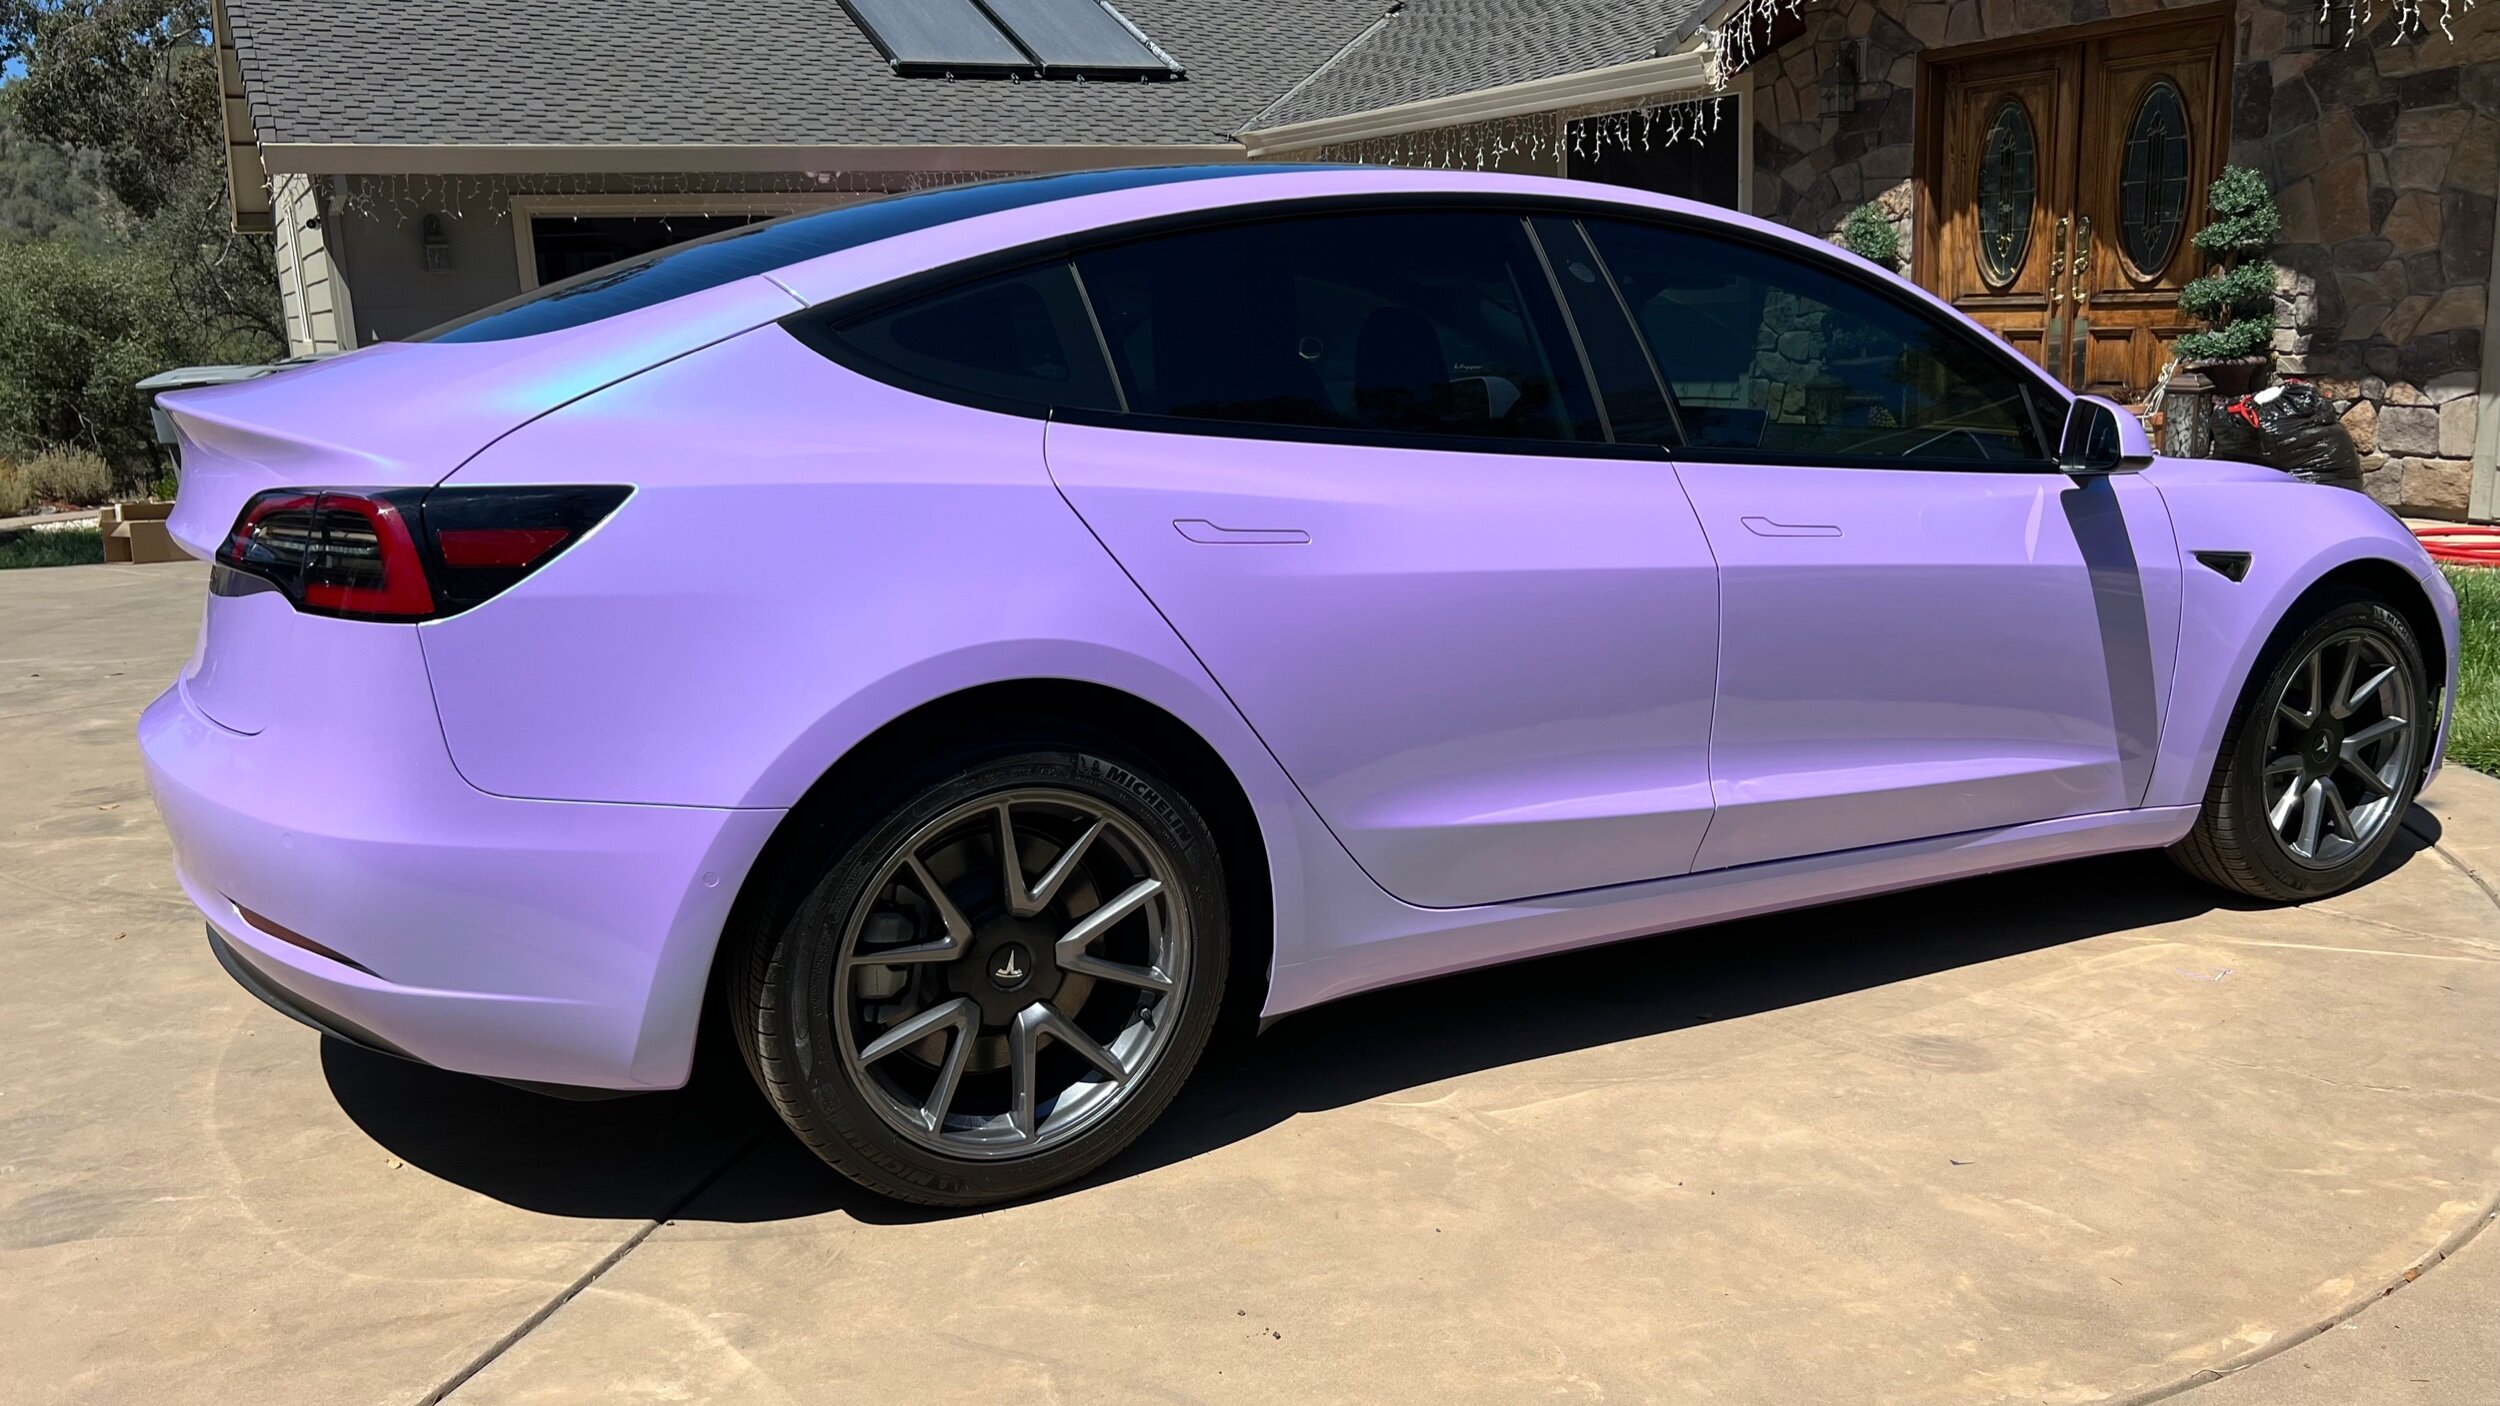 Purple Tesla Model 3 - Ultra Matte Moonlight Purple Wrap